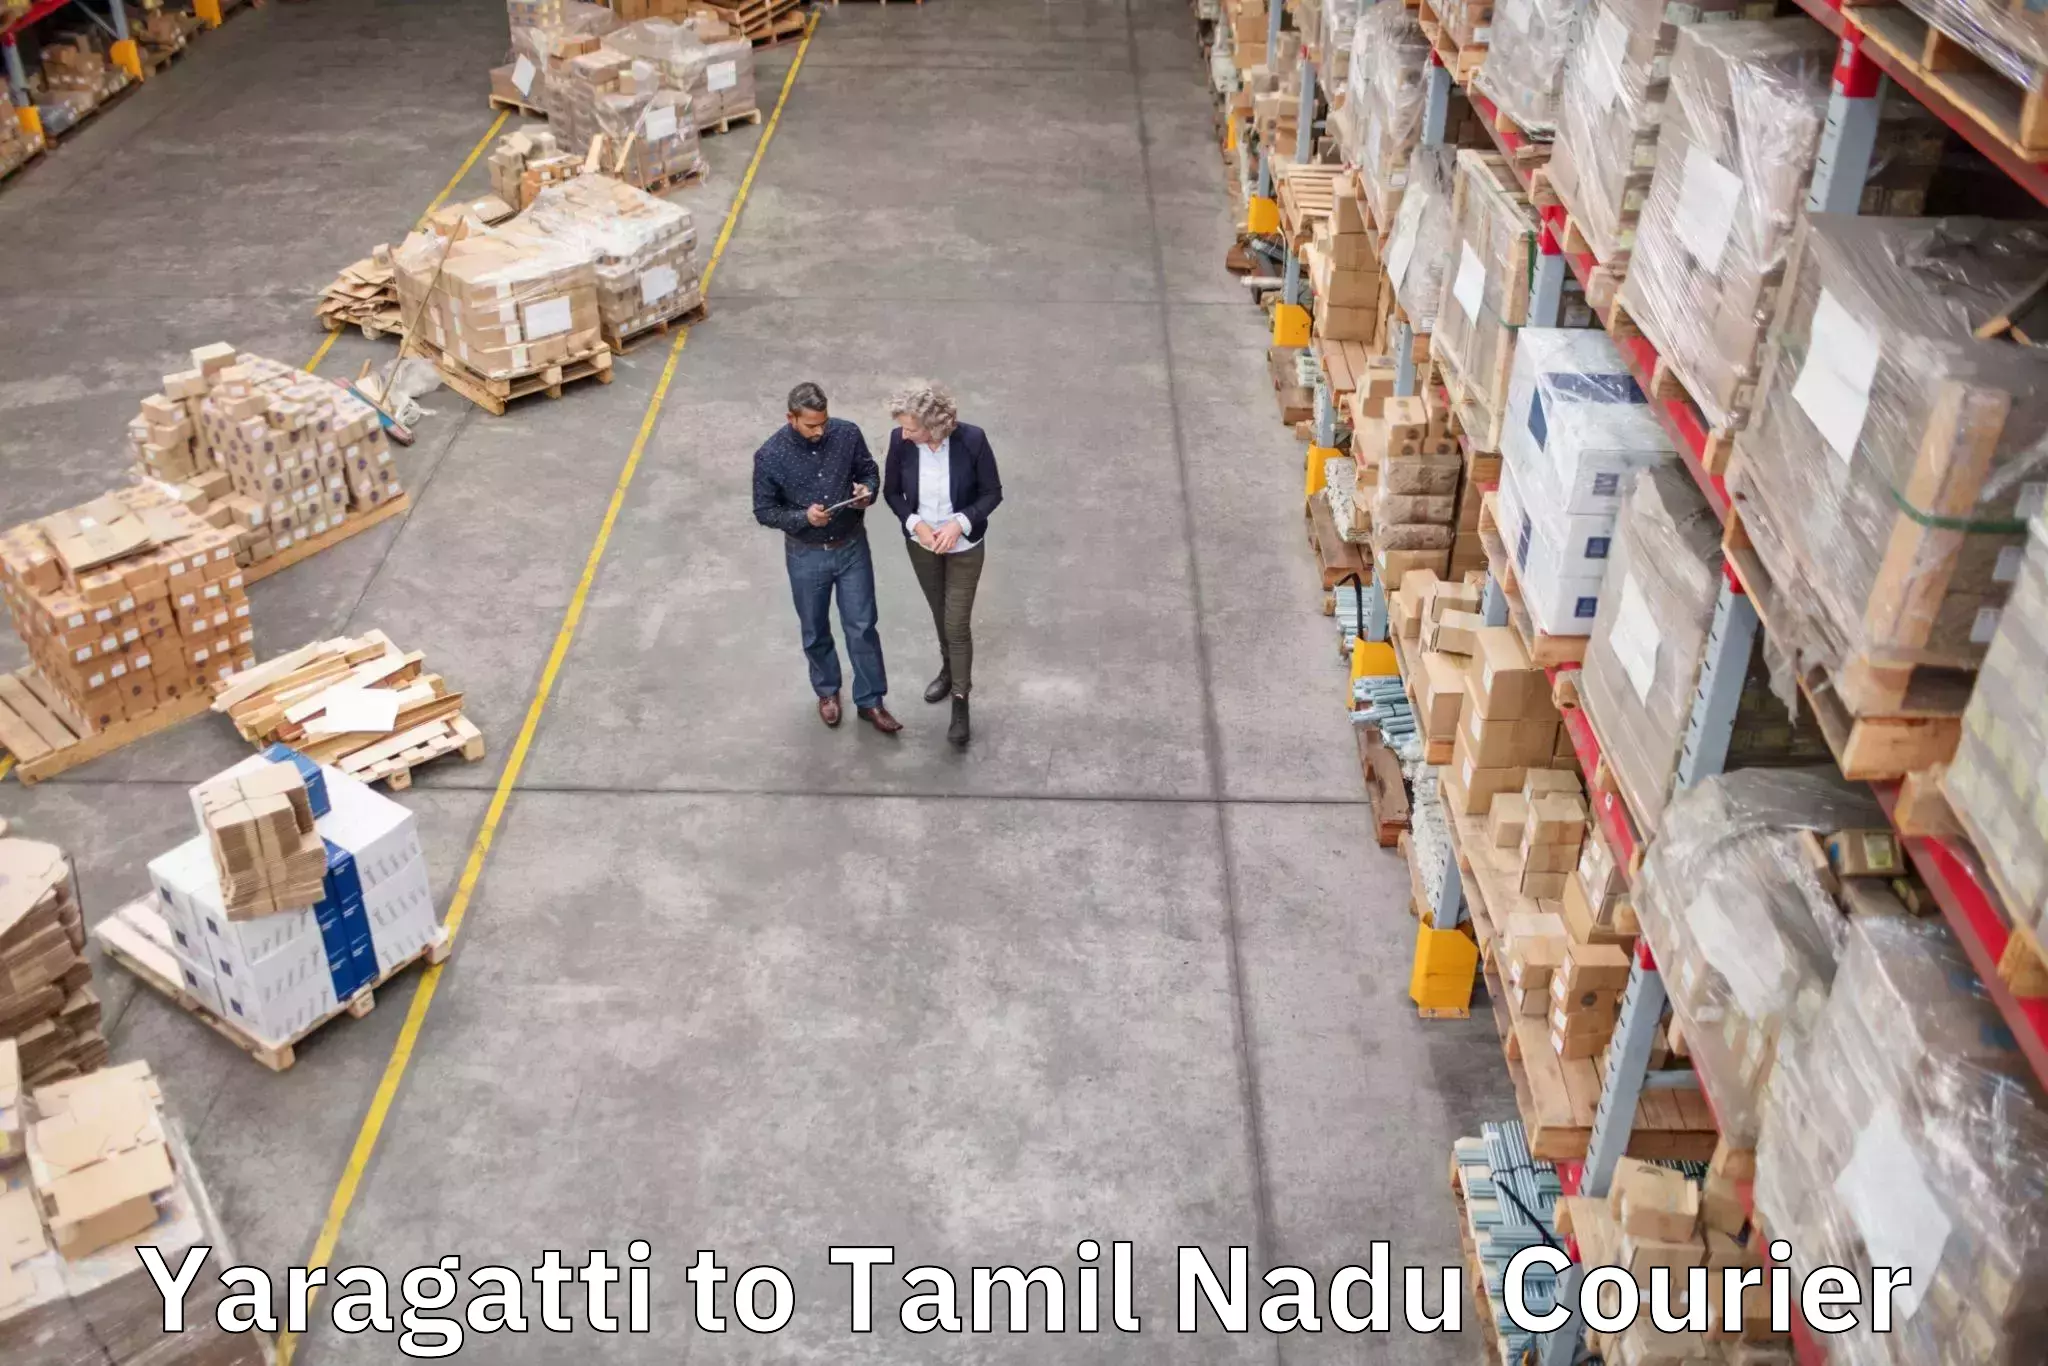 Baggage transport professionals Yaragatti to Tamil Nadu